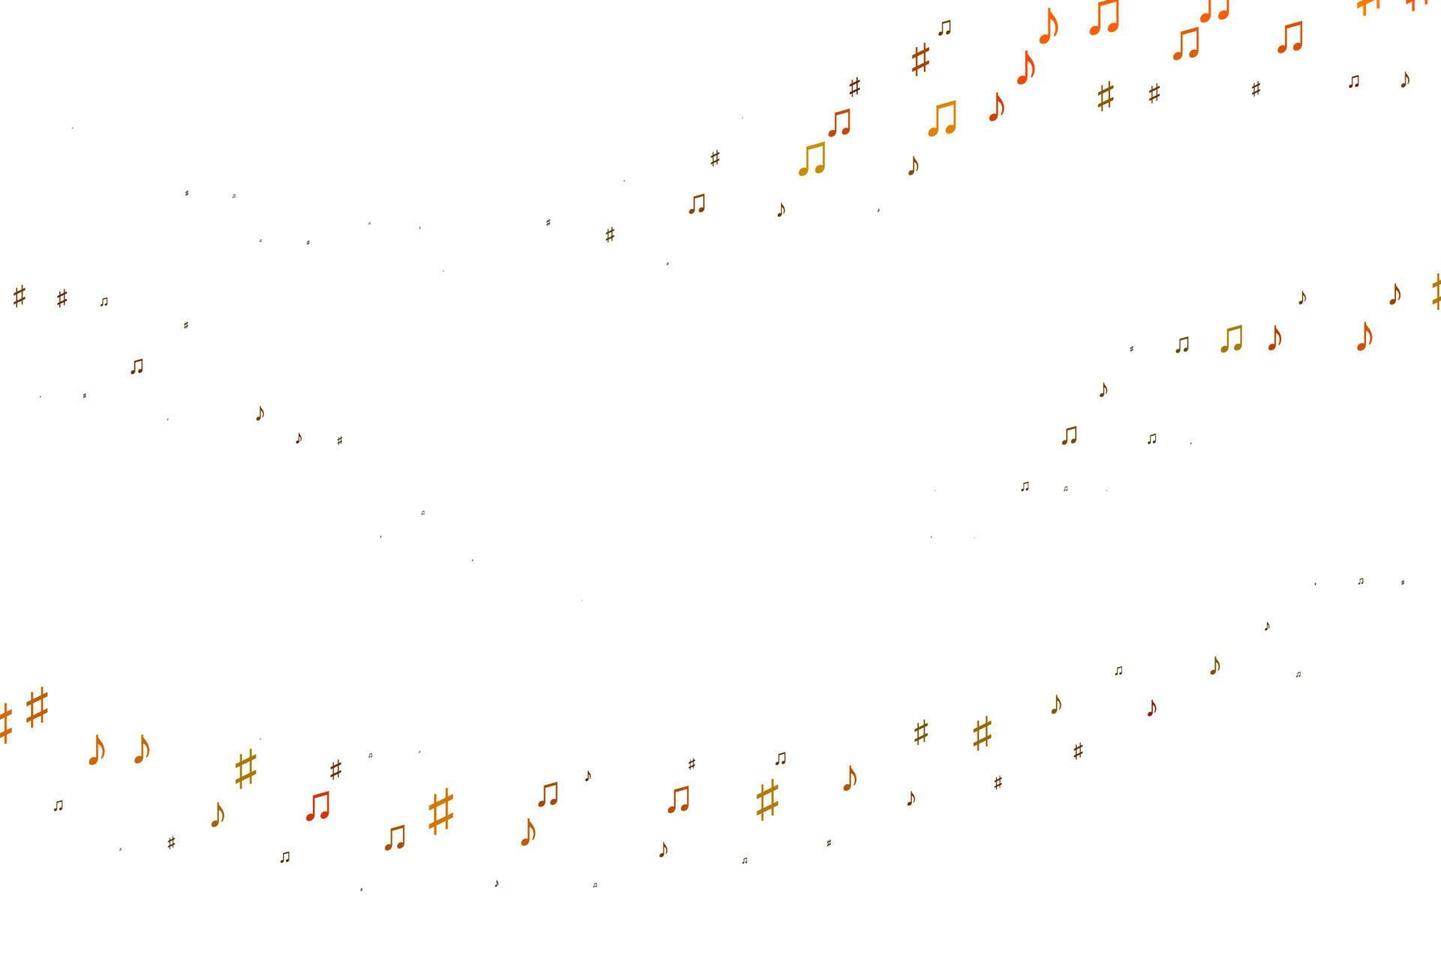 texture vecteur orange clair avec des notes de musique.